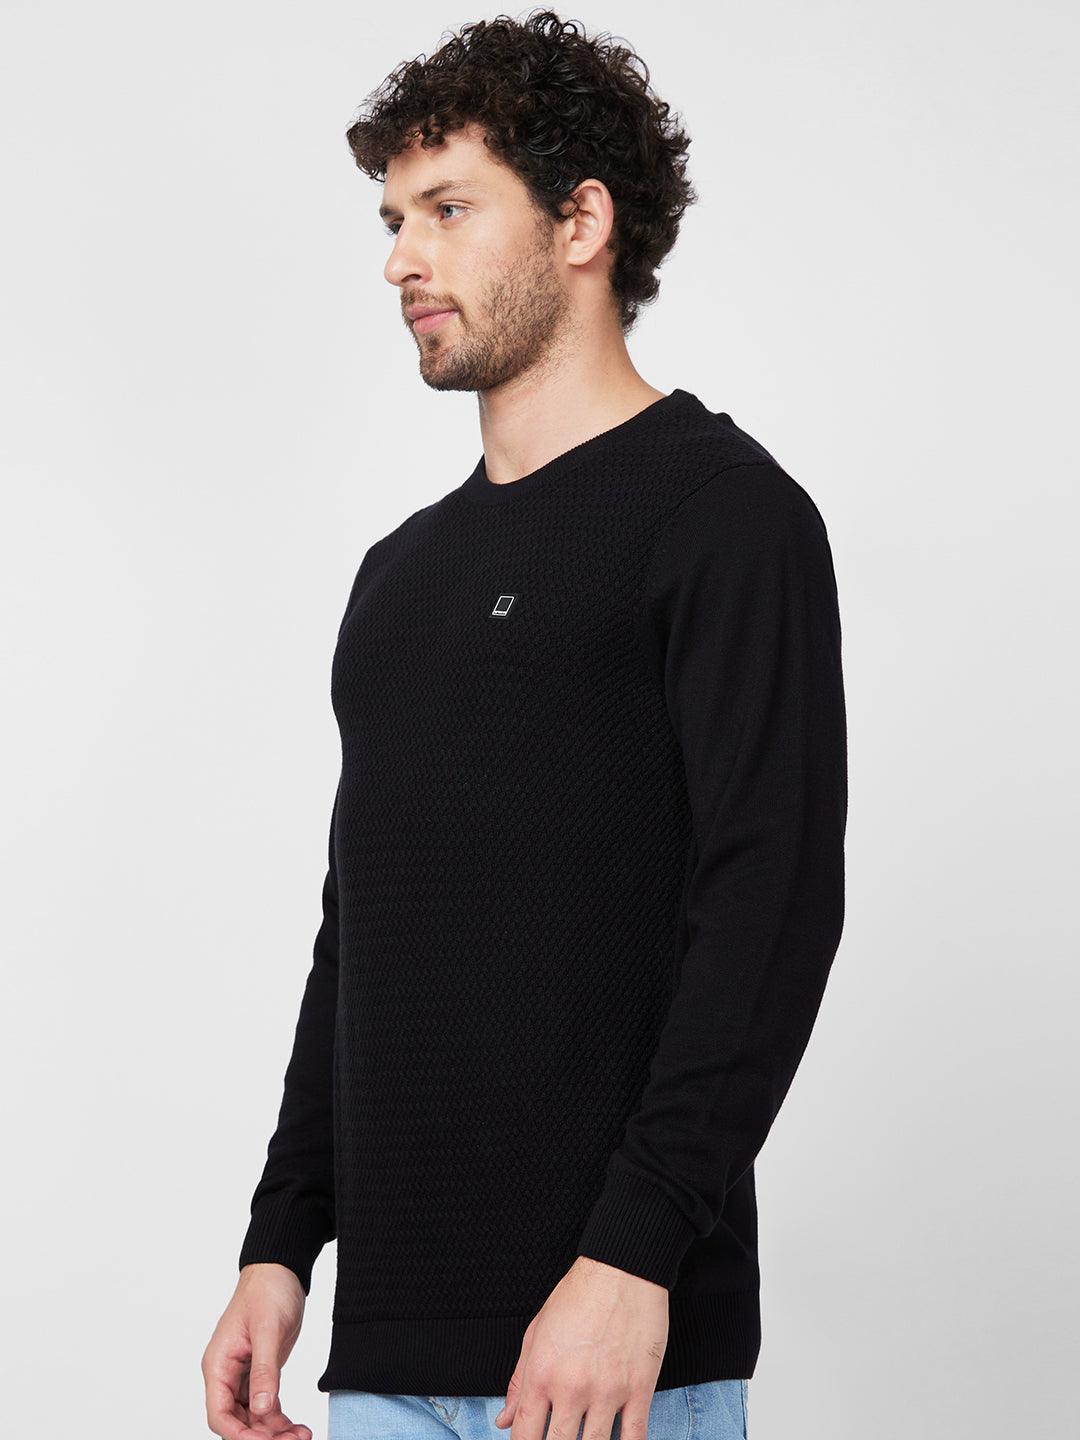 Spykar Collarless Full Sleeves Black Sweater For Men